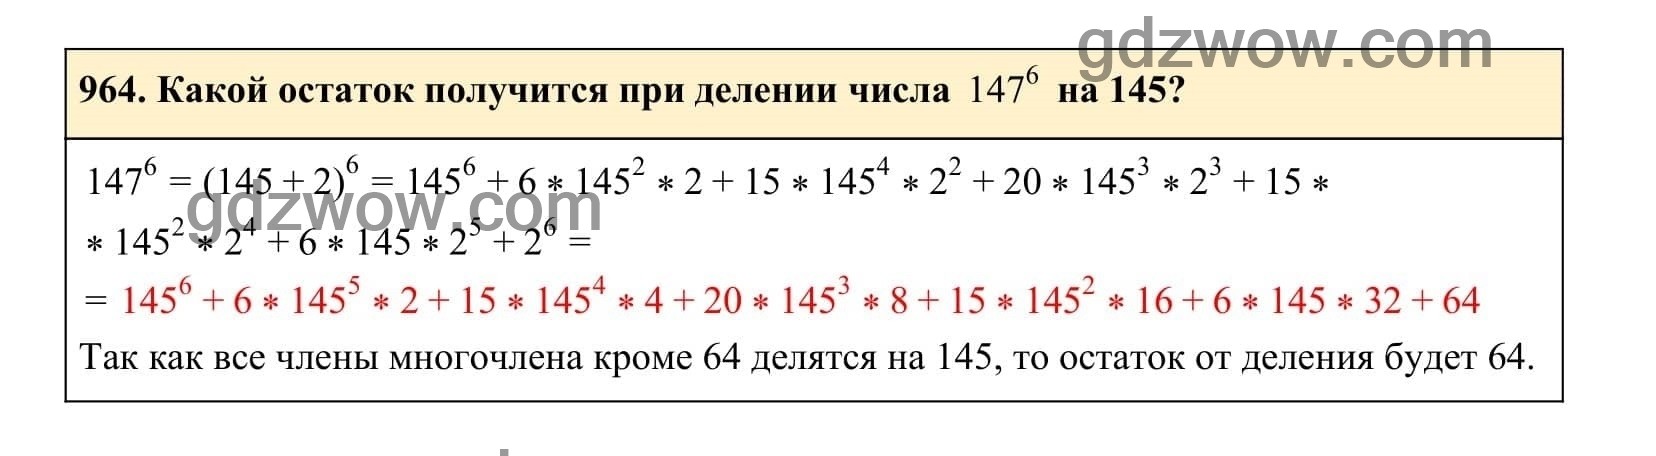 Упражнение 964 - ГДЗ по Алгебре 7 класс Учебник Макарычев (решебник) - GDZwow